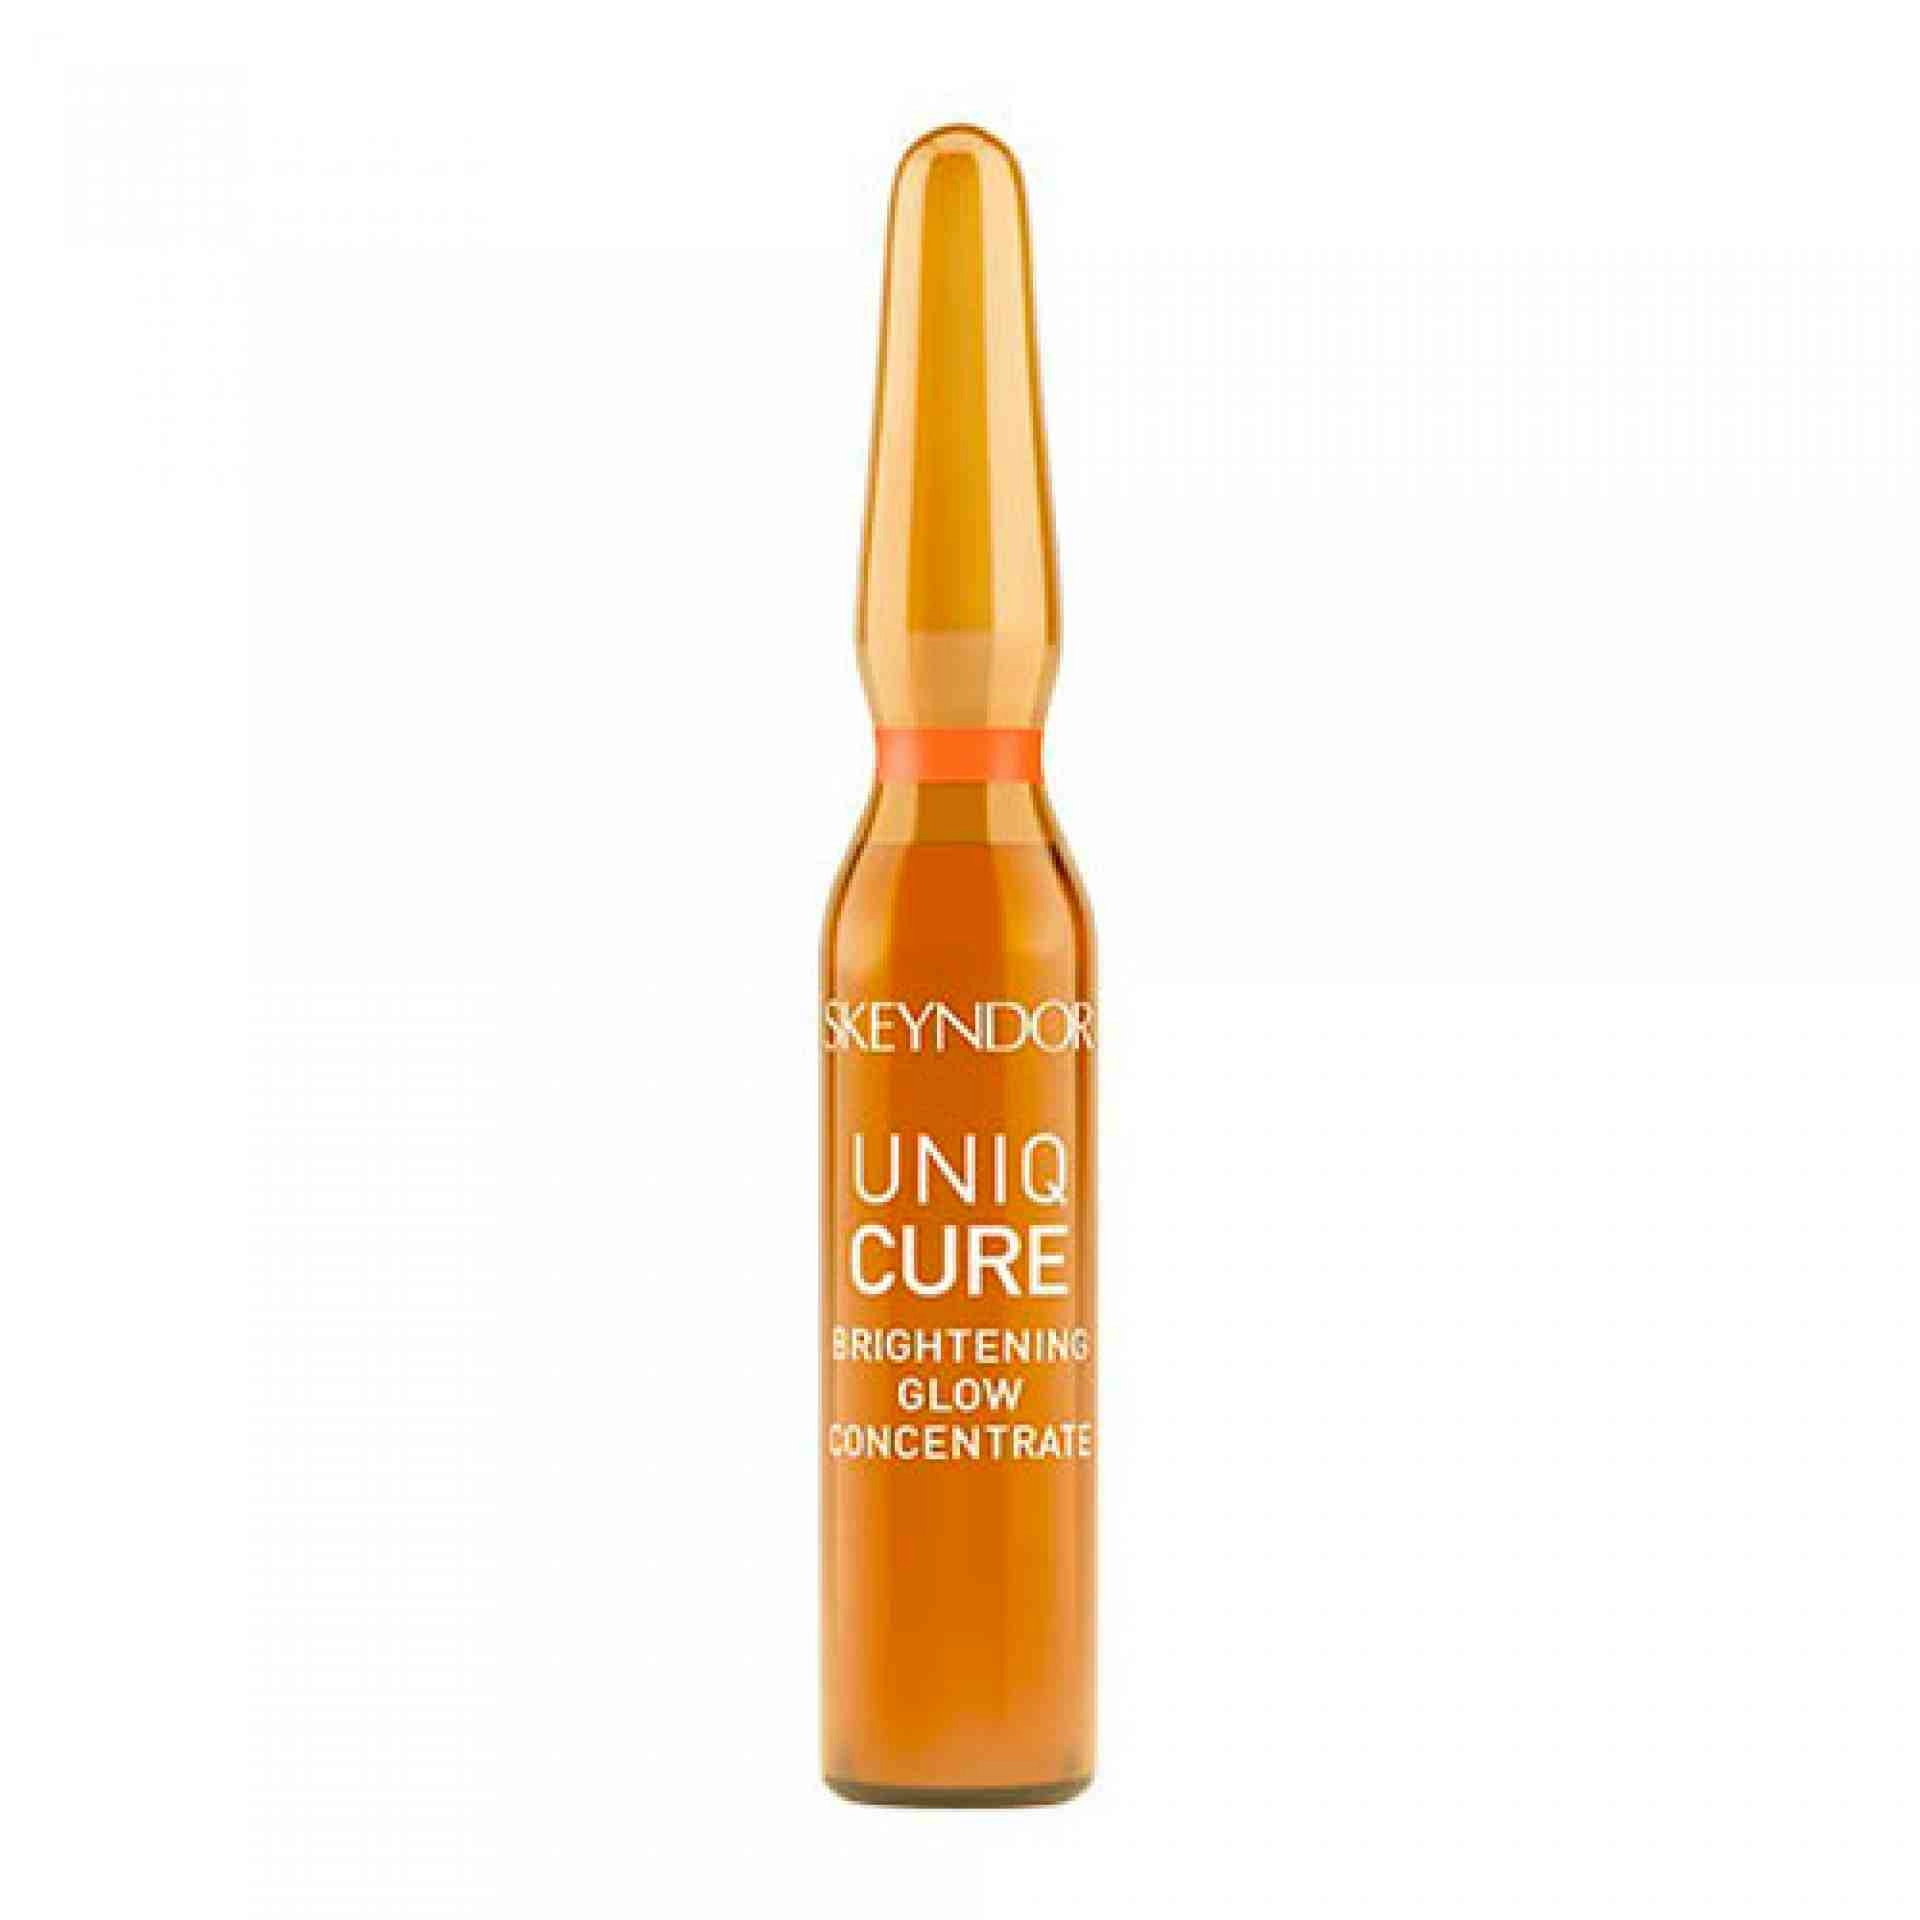 Uniqcure Brightening Glow Concentrate | Concentrado Iluminador 7x2ml - Uniqcure - Skeyndor ®